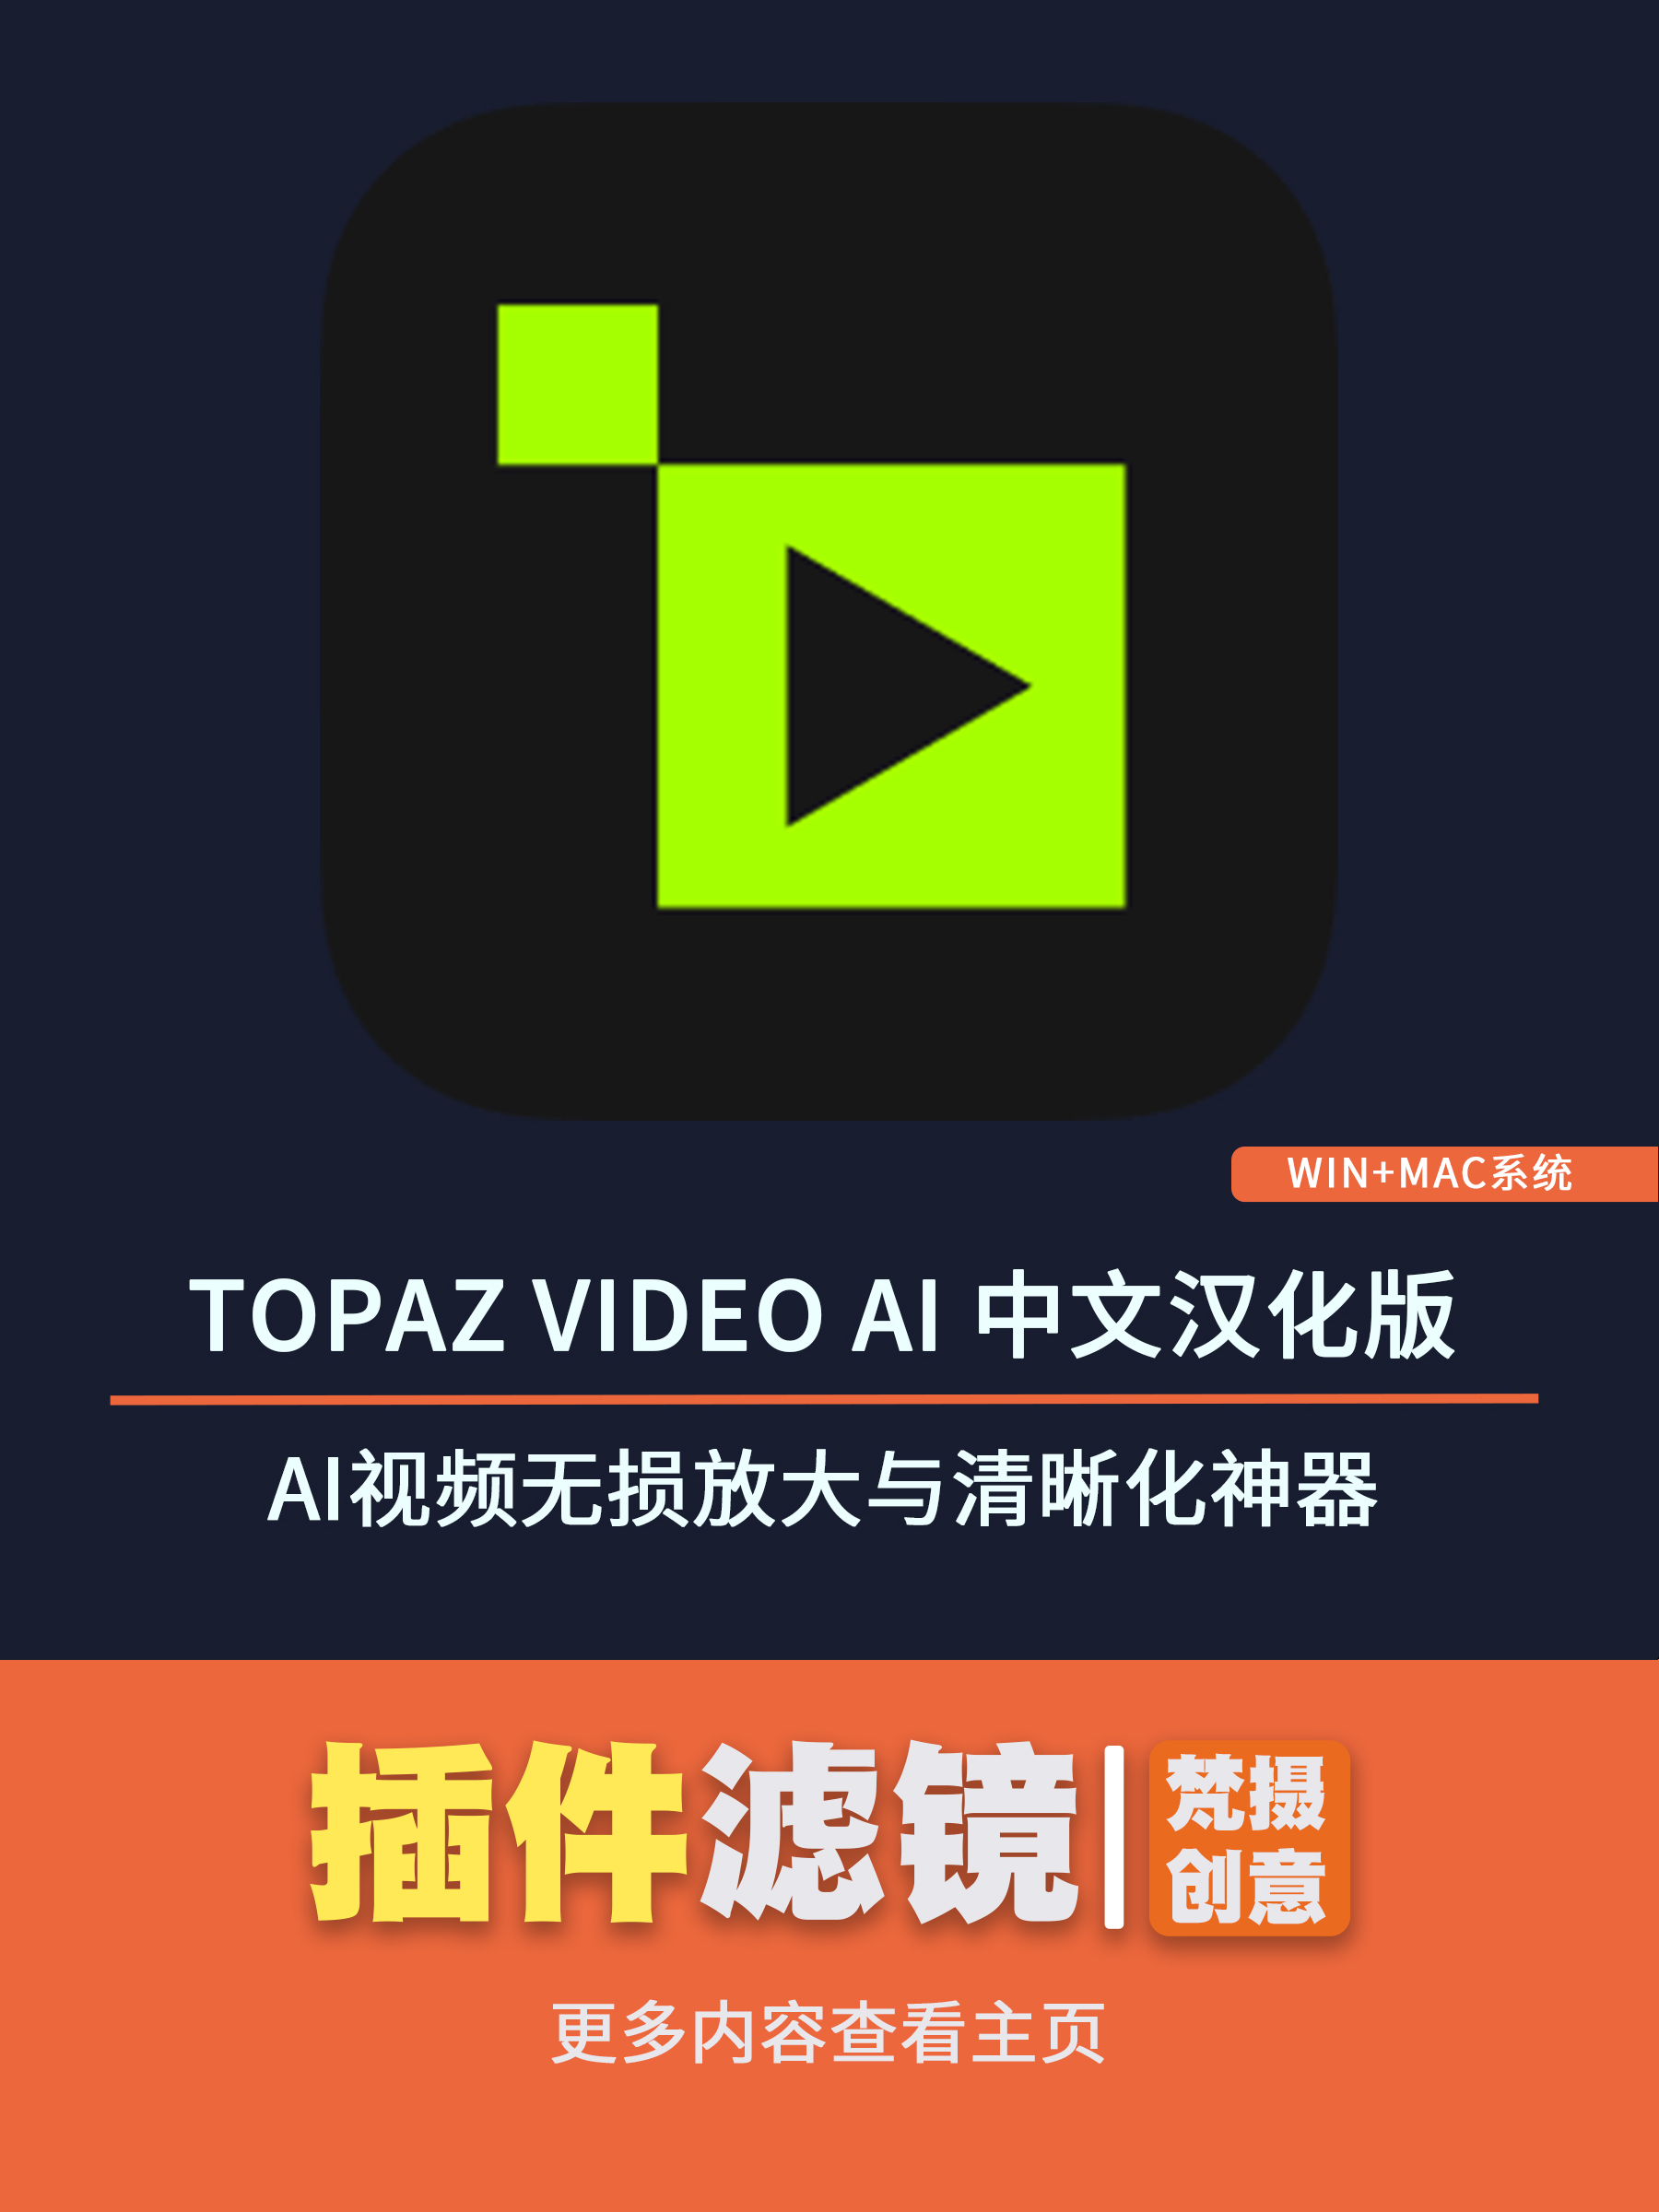 Topaz Video AI v5.0.1 汉化版：AI视频无损放大与清晰化神器-梵摄创意库